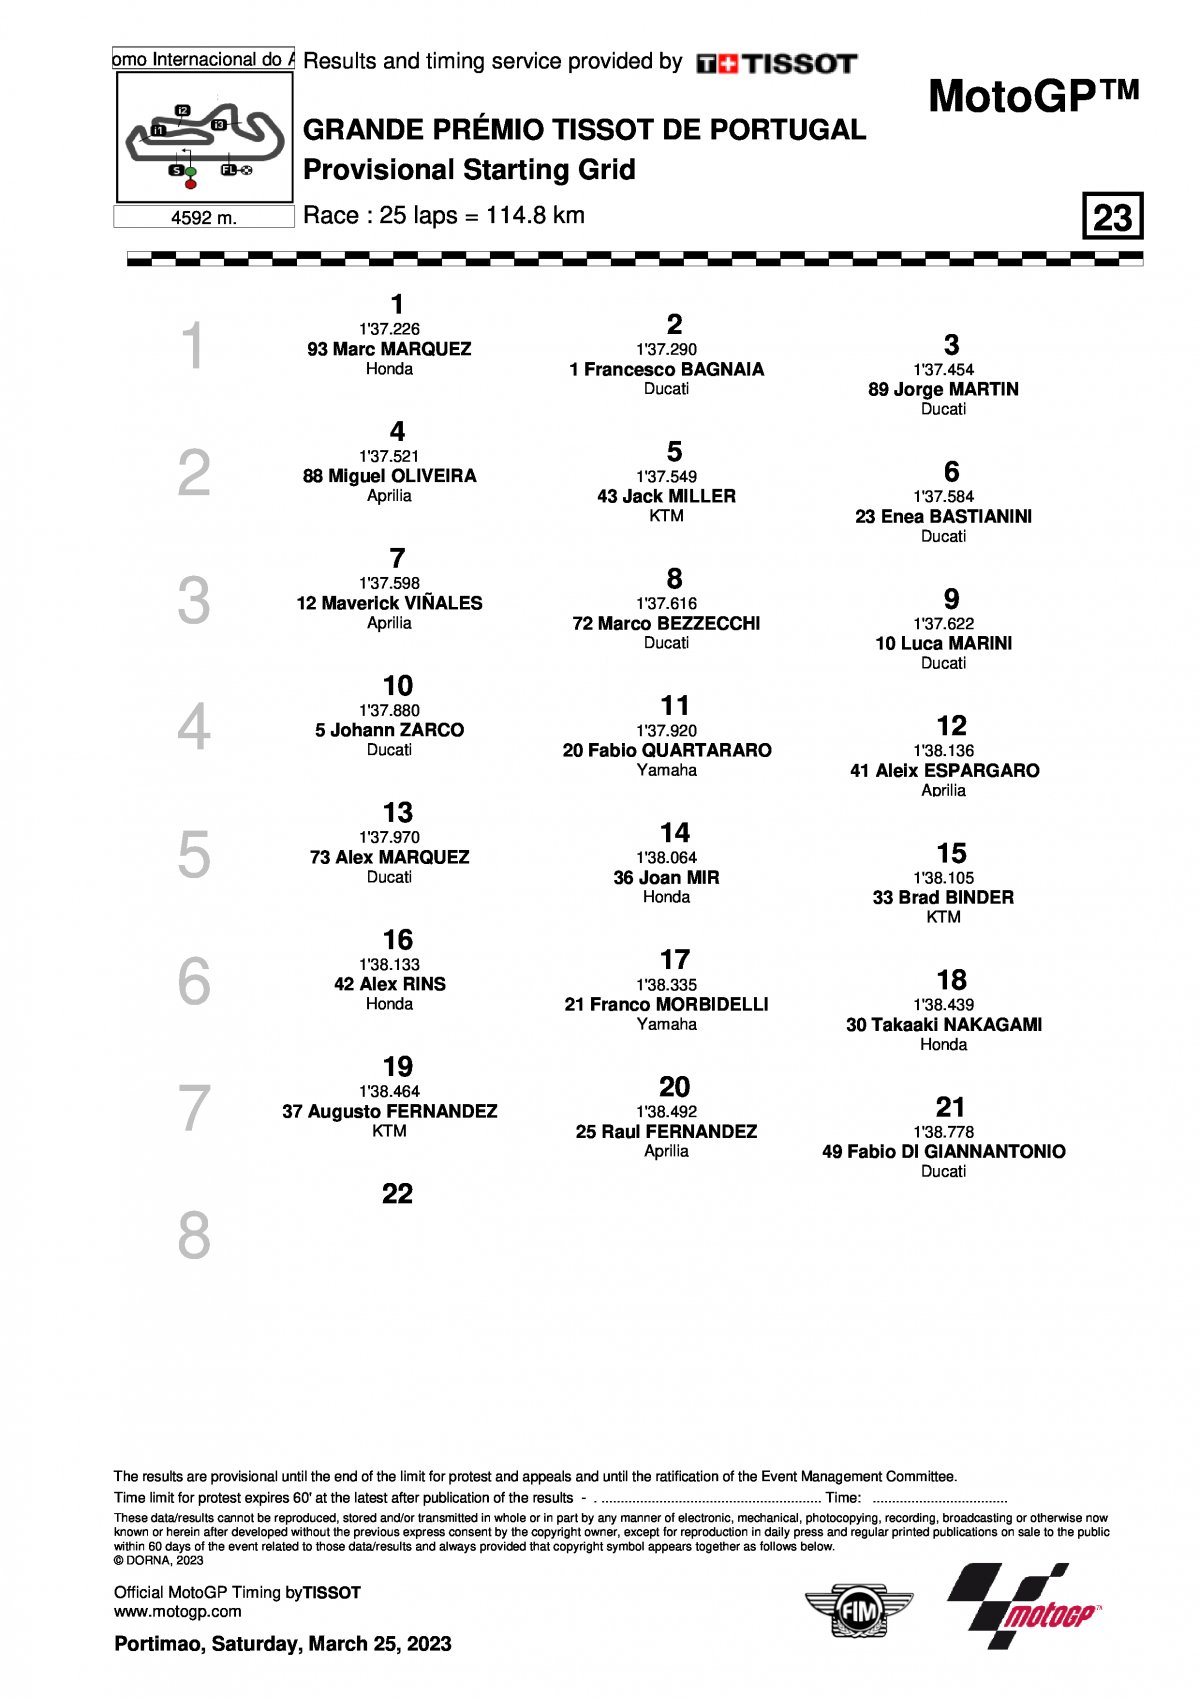 Стартовая решетка Гран-При Португалии MotoGP (26/03/2023)